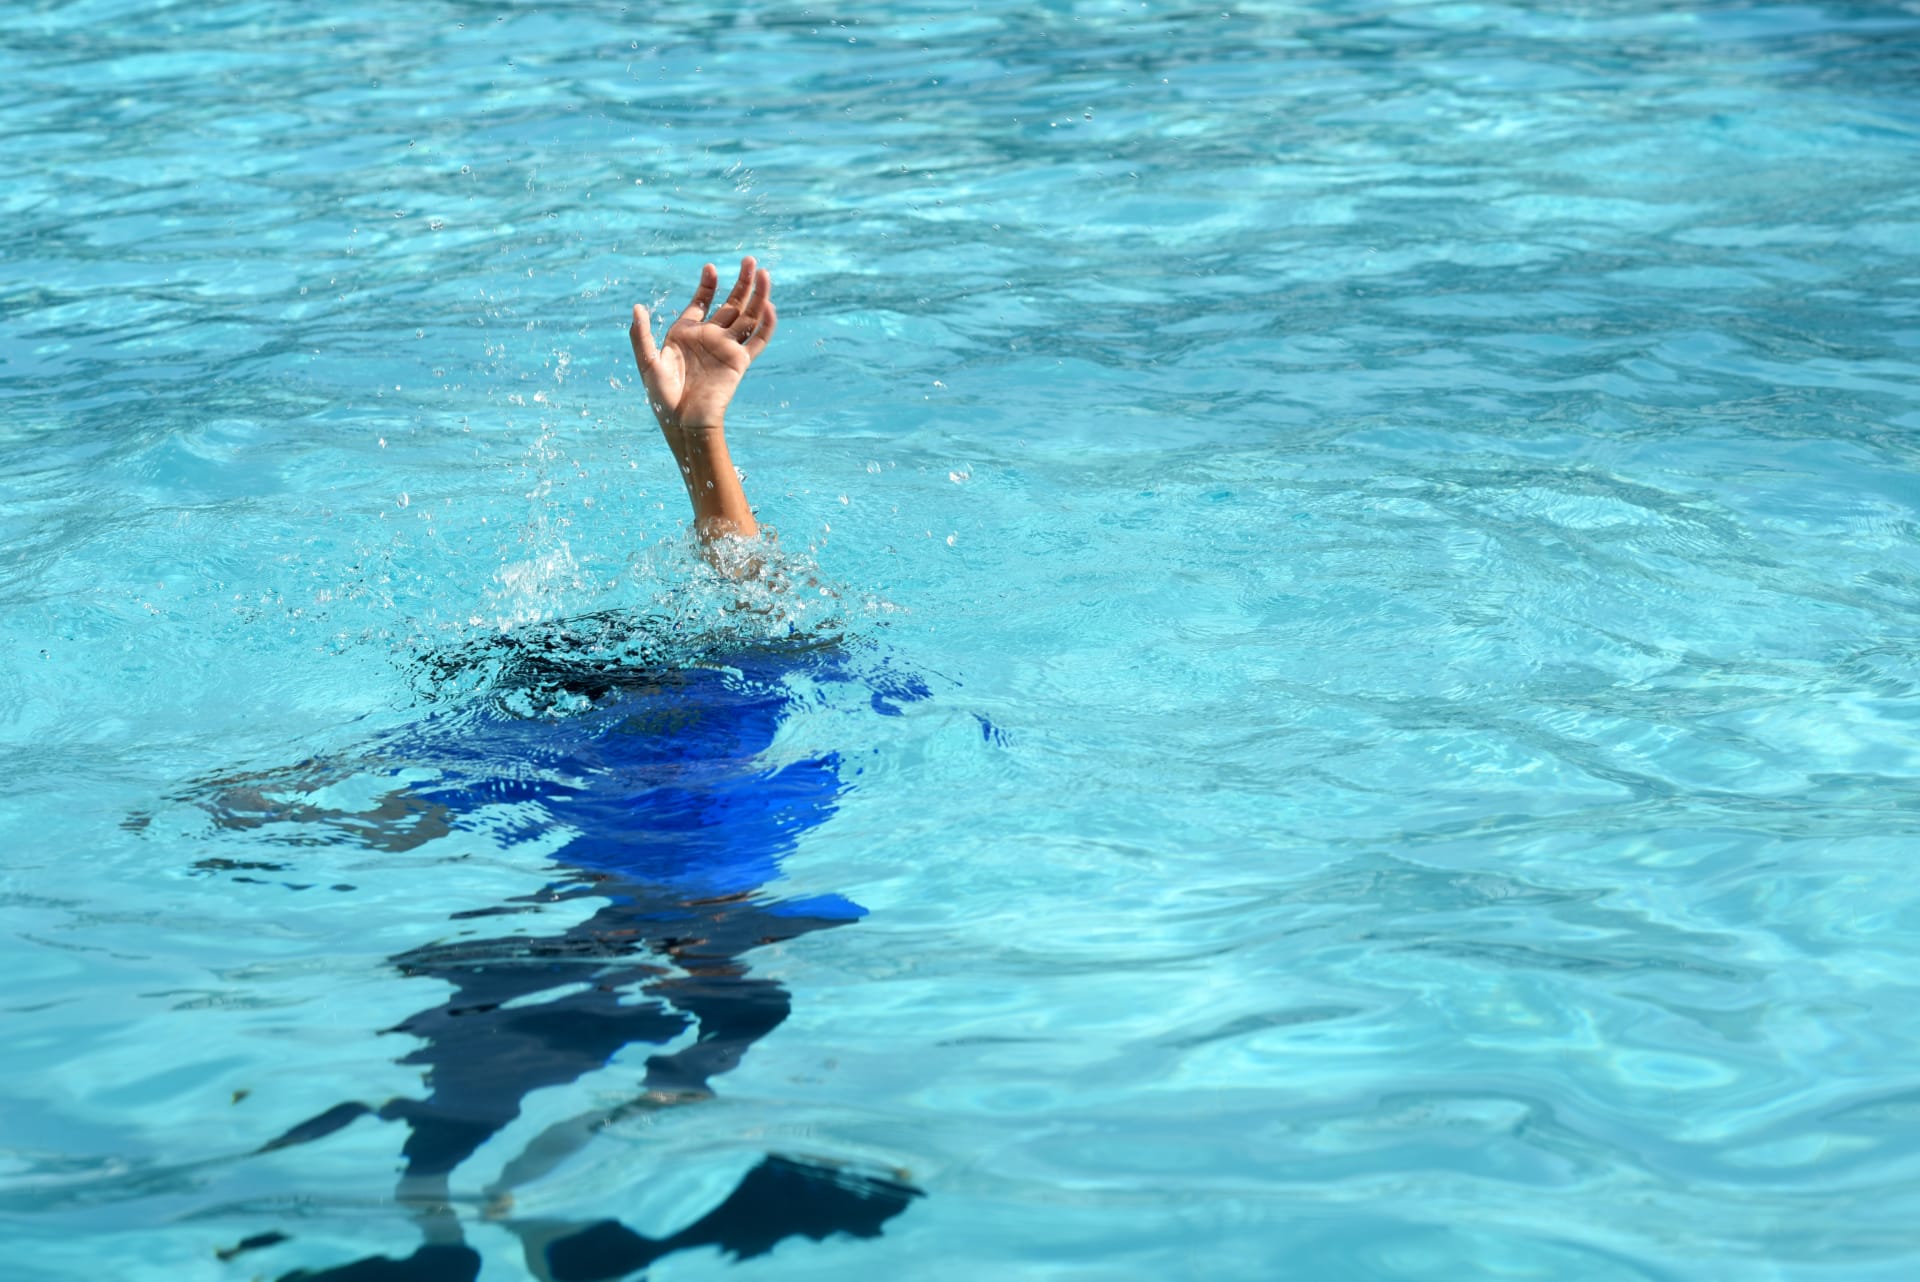 Šestiletý chlapec z Belfastu se utopil v bazénu na dovolené. 